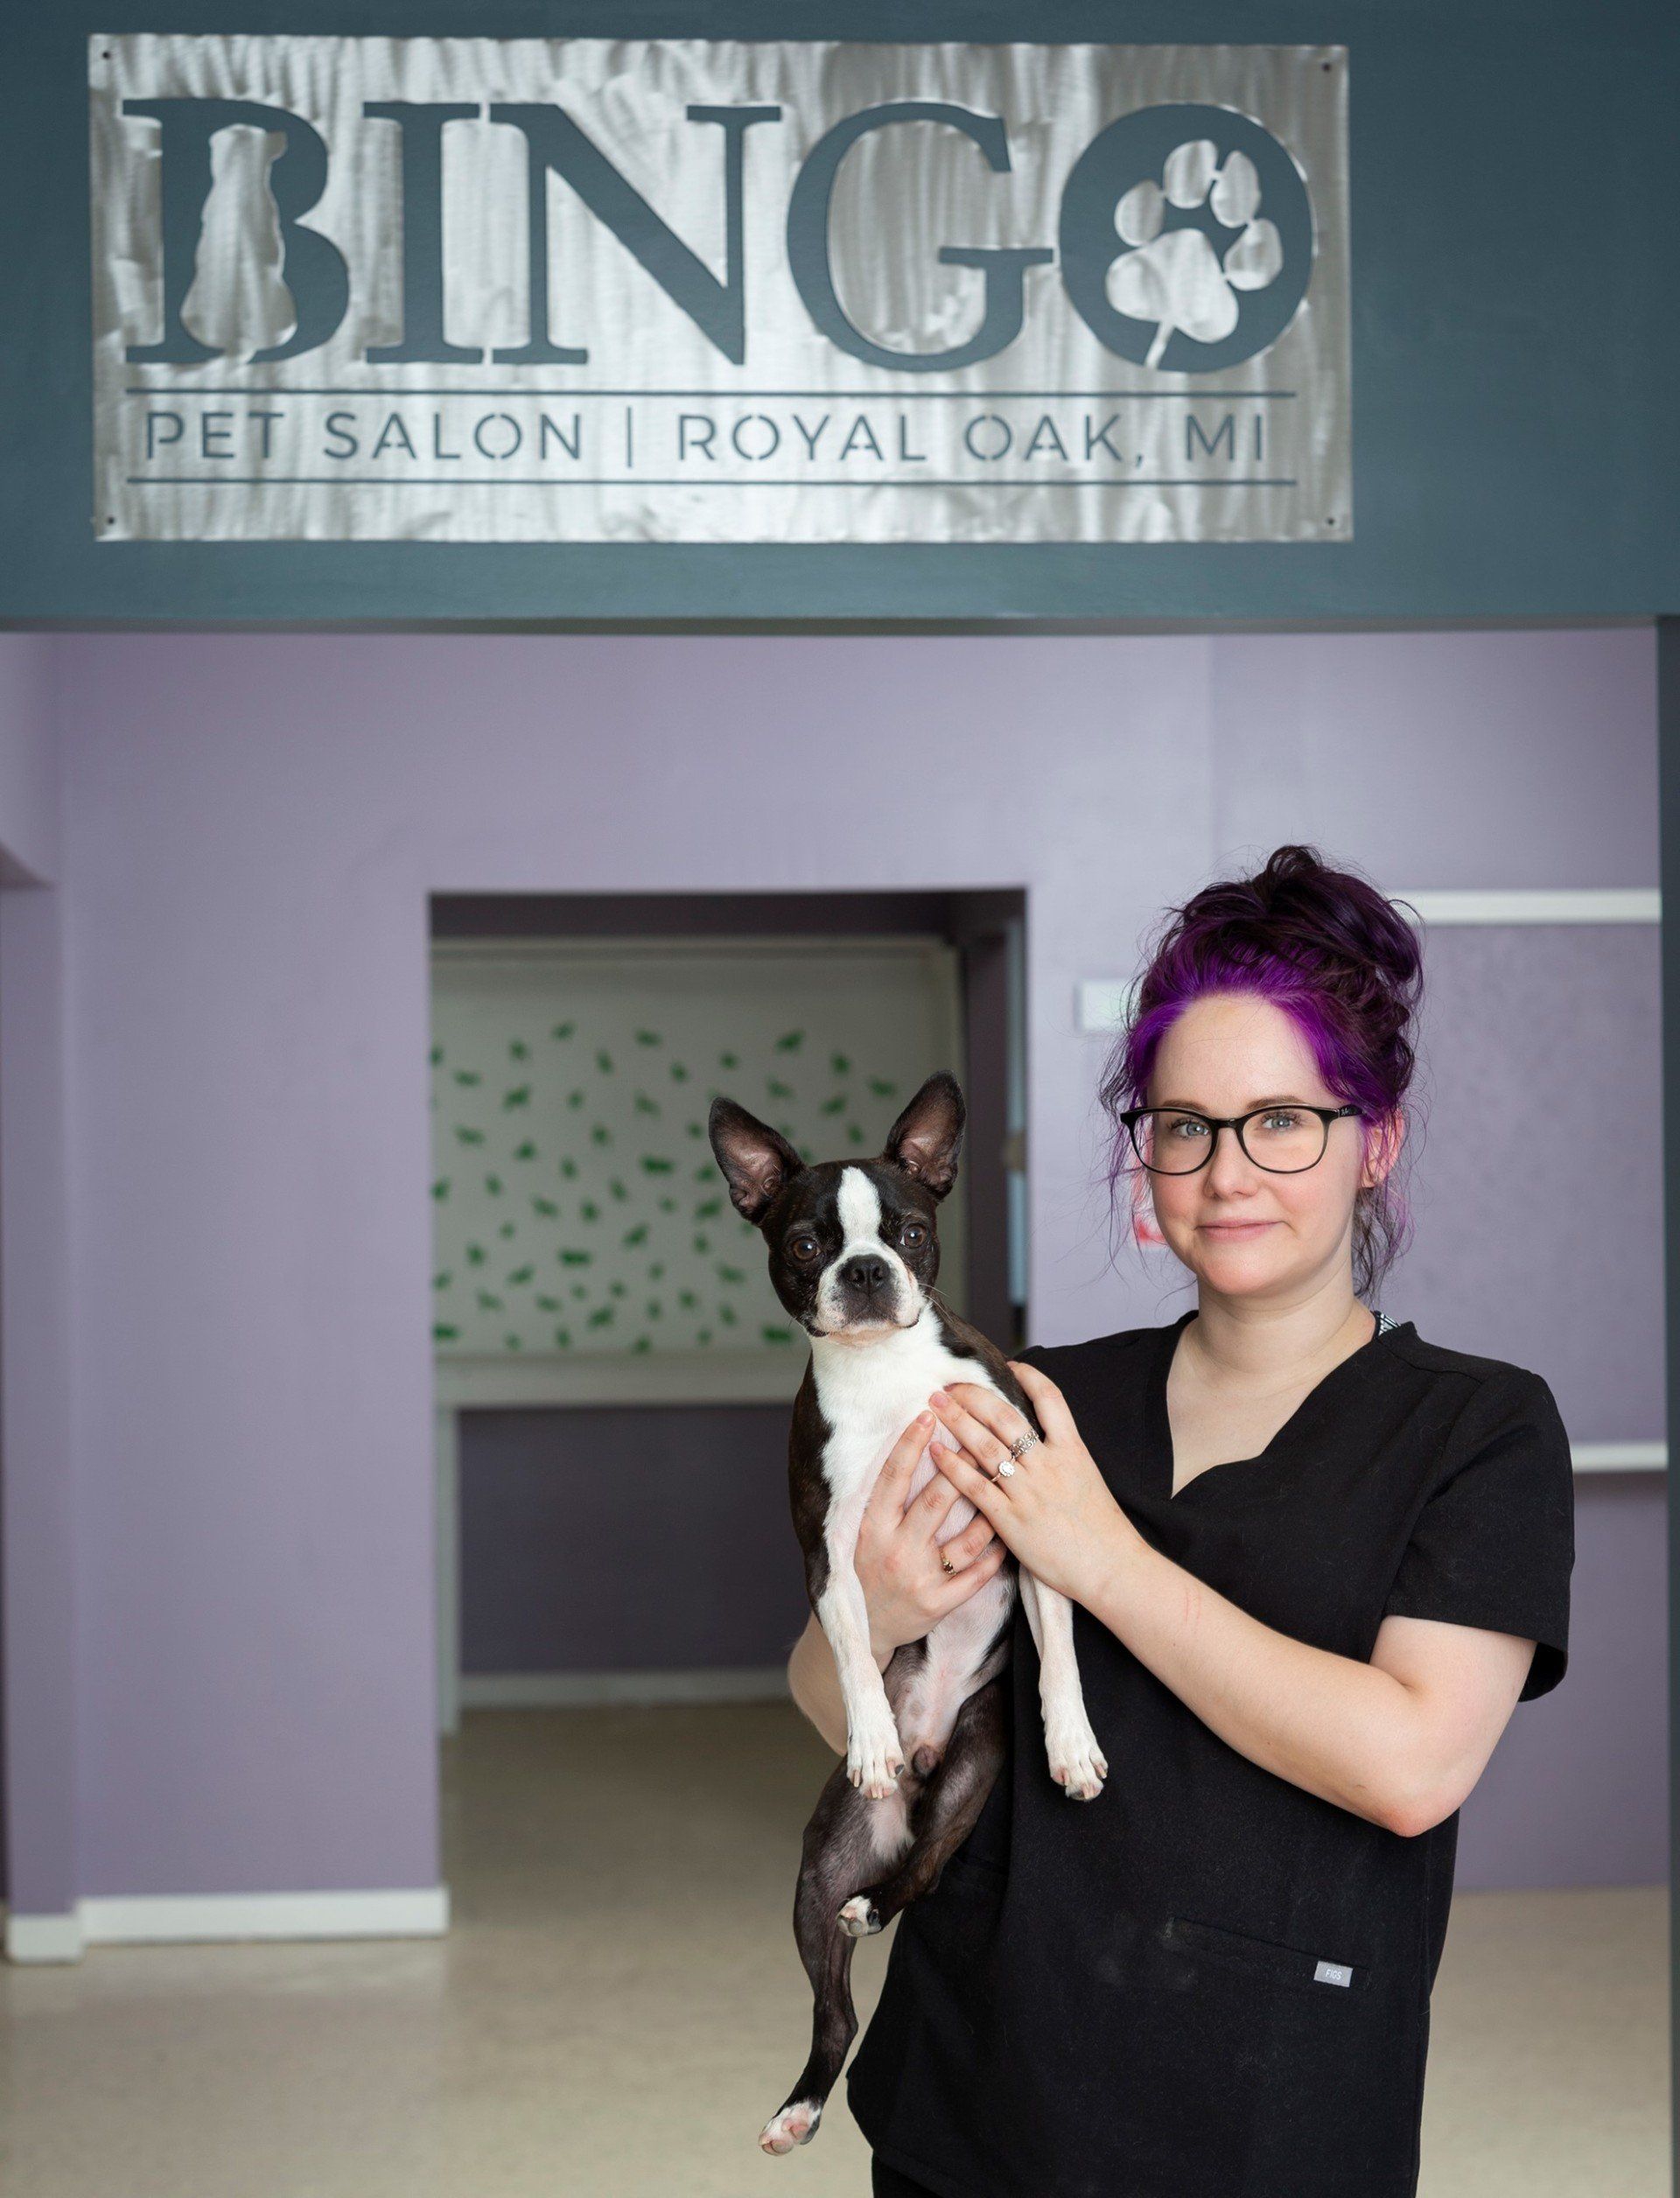 Meet The Staff Bingo Pet Salon Downtown Royal Oak, Michigan